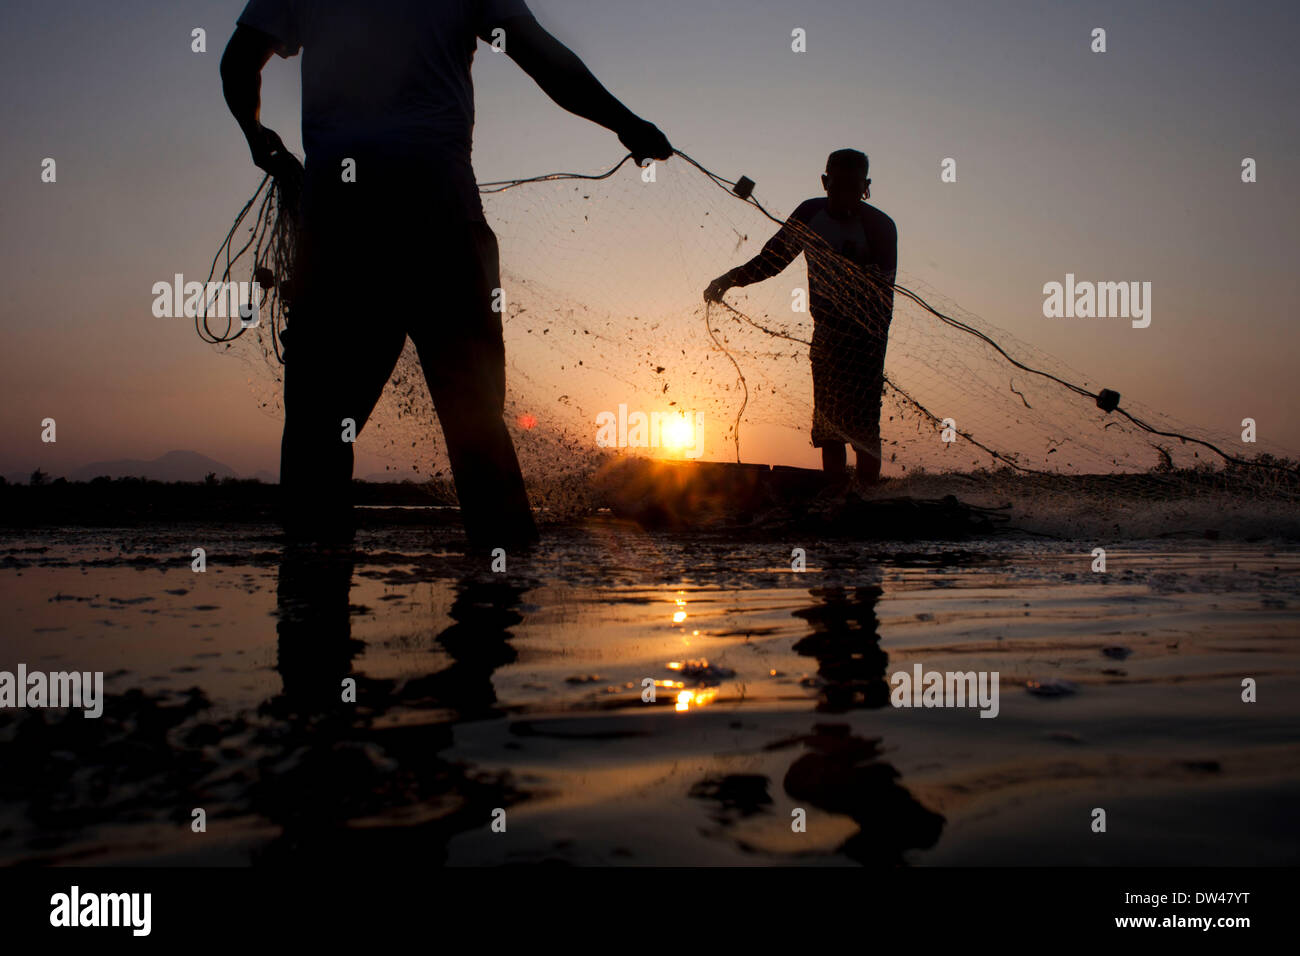 26 févr. 2014 - Banda Aceh, Aceh, Indonésie - les hommes à l'aide de filets de pêche dans un étang à poissons. La production de la pêche de l'Indonésie ont totalisé 15,26 millions de tonnes en 2012, avec la capture sauvage comptant pour 5,81 millions de tonnes et de l'aquaculture pour 9,45 millions de tonnes, selon le Ministère des affaires maritimes et des pêches. L'ORGANISATION DES NATIONS UNIES POUR L'alimentation et l'agriculture (FAO) en 2011 l'Indonésie se classe troisième au monde en termes de prises marines et intérieures ainsi que quatrième dans l'aquaculture de la production. Les exportations de la pêche a fortement augmenté ces dernières années et ont atteint 3,9 milliards USD en 2012, avec la plupart des expéditions aux États-Unis Banque D'Images